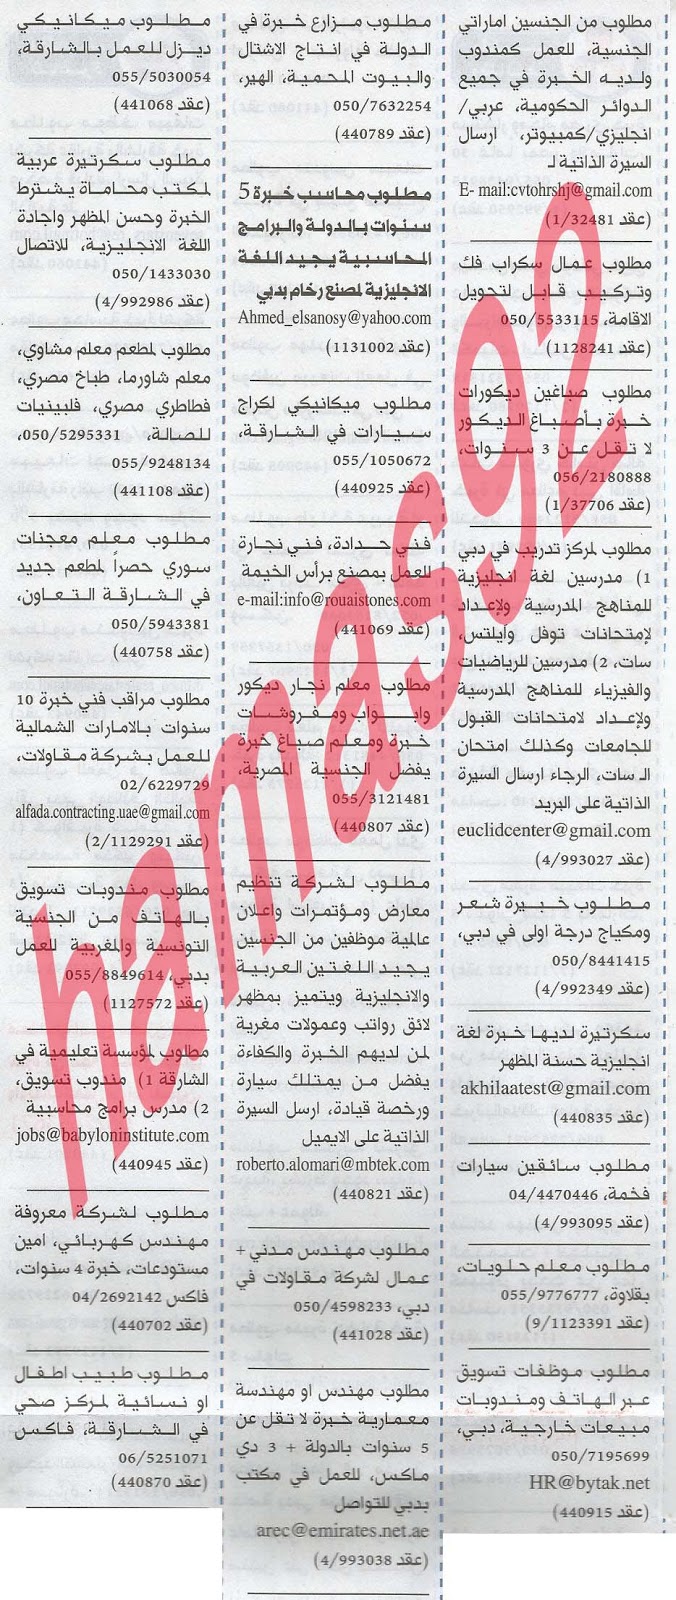 وظائف شاغرة من جريدة الخليج الاماراتية اليوم الاثنين 29/4/2013 %D8%A7%D9%84%D8%AE%D9%84%D9%8A%D8%AC+3